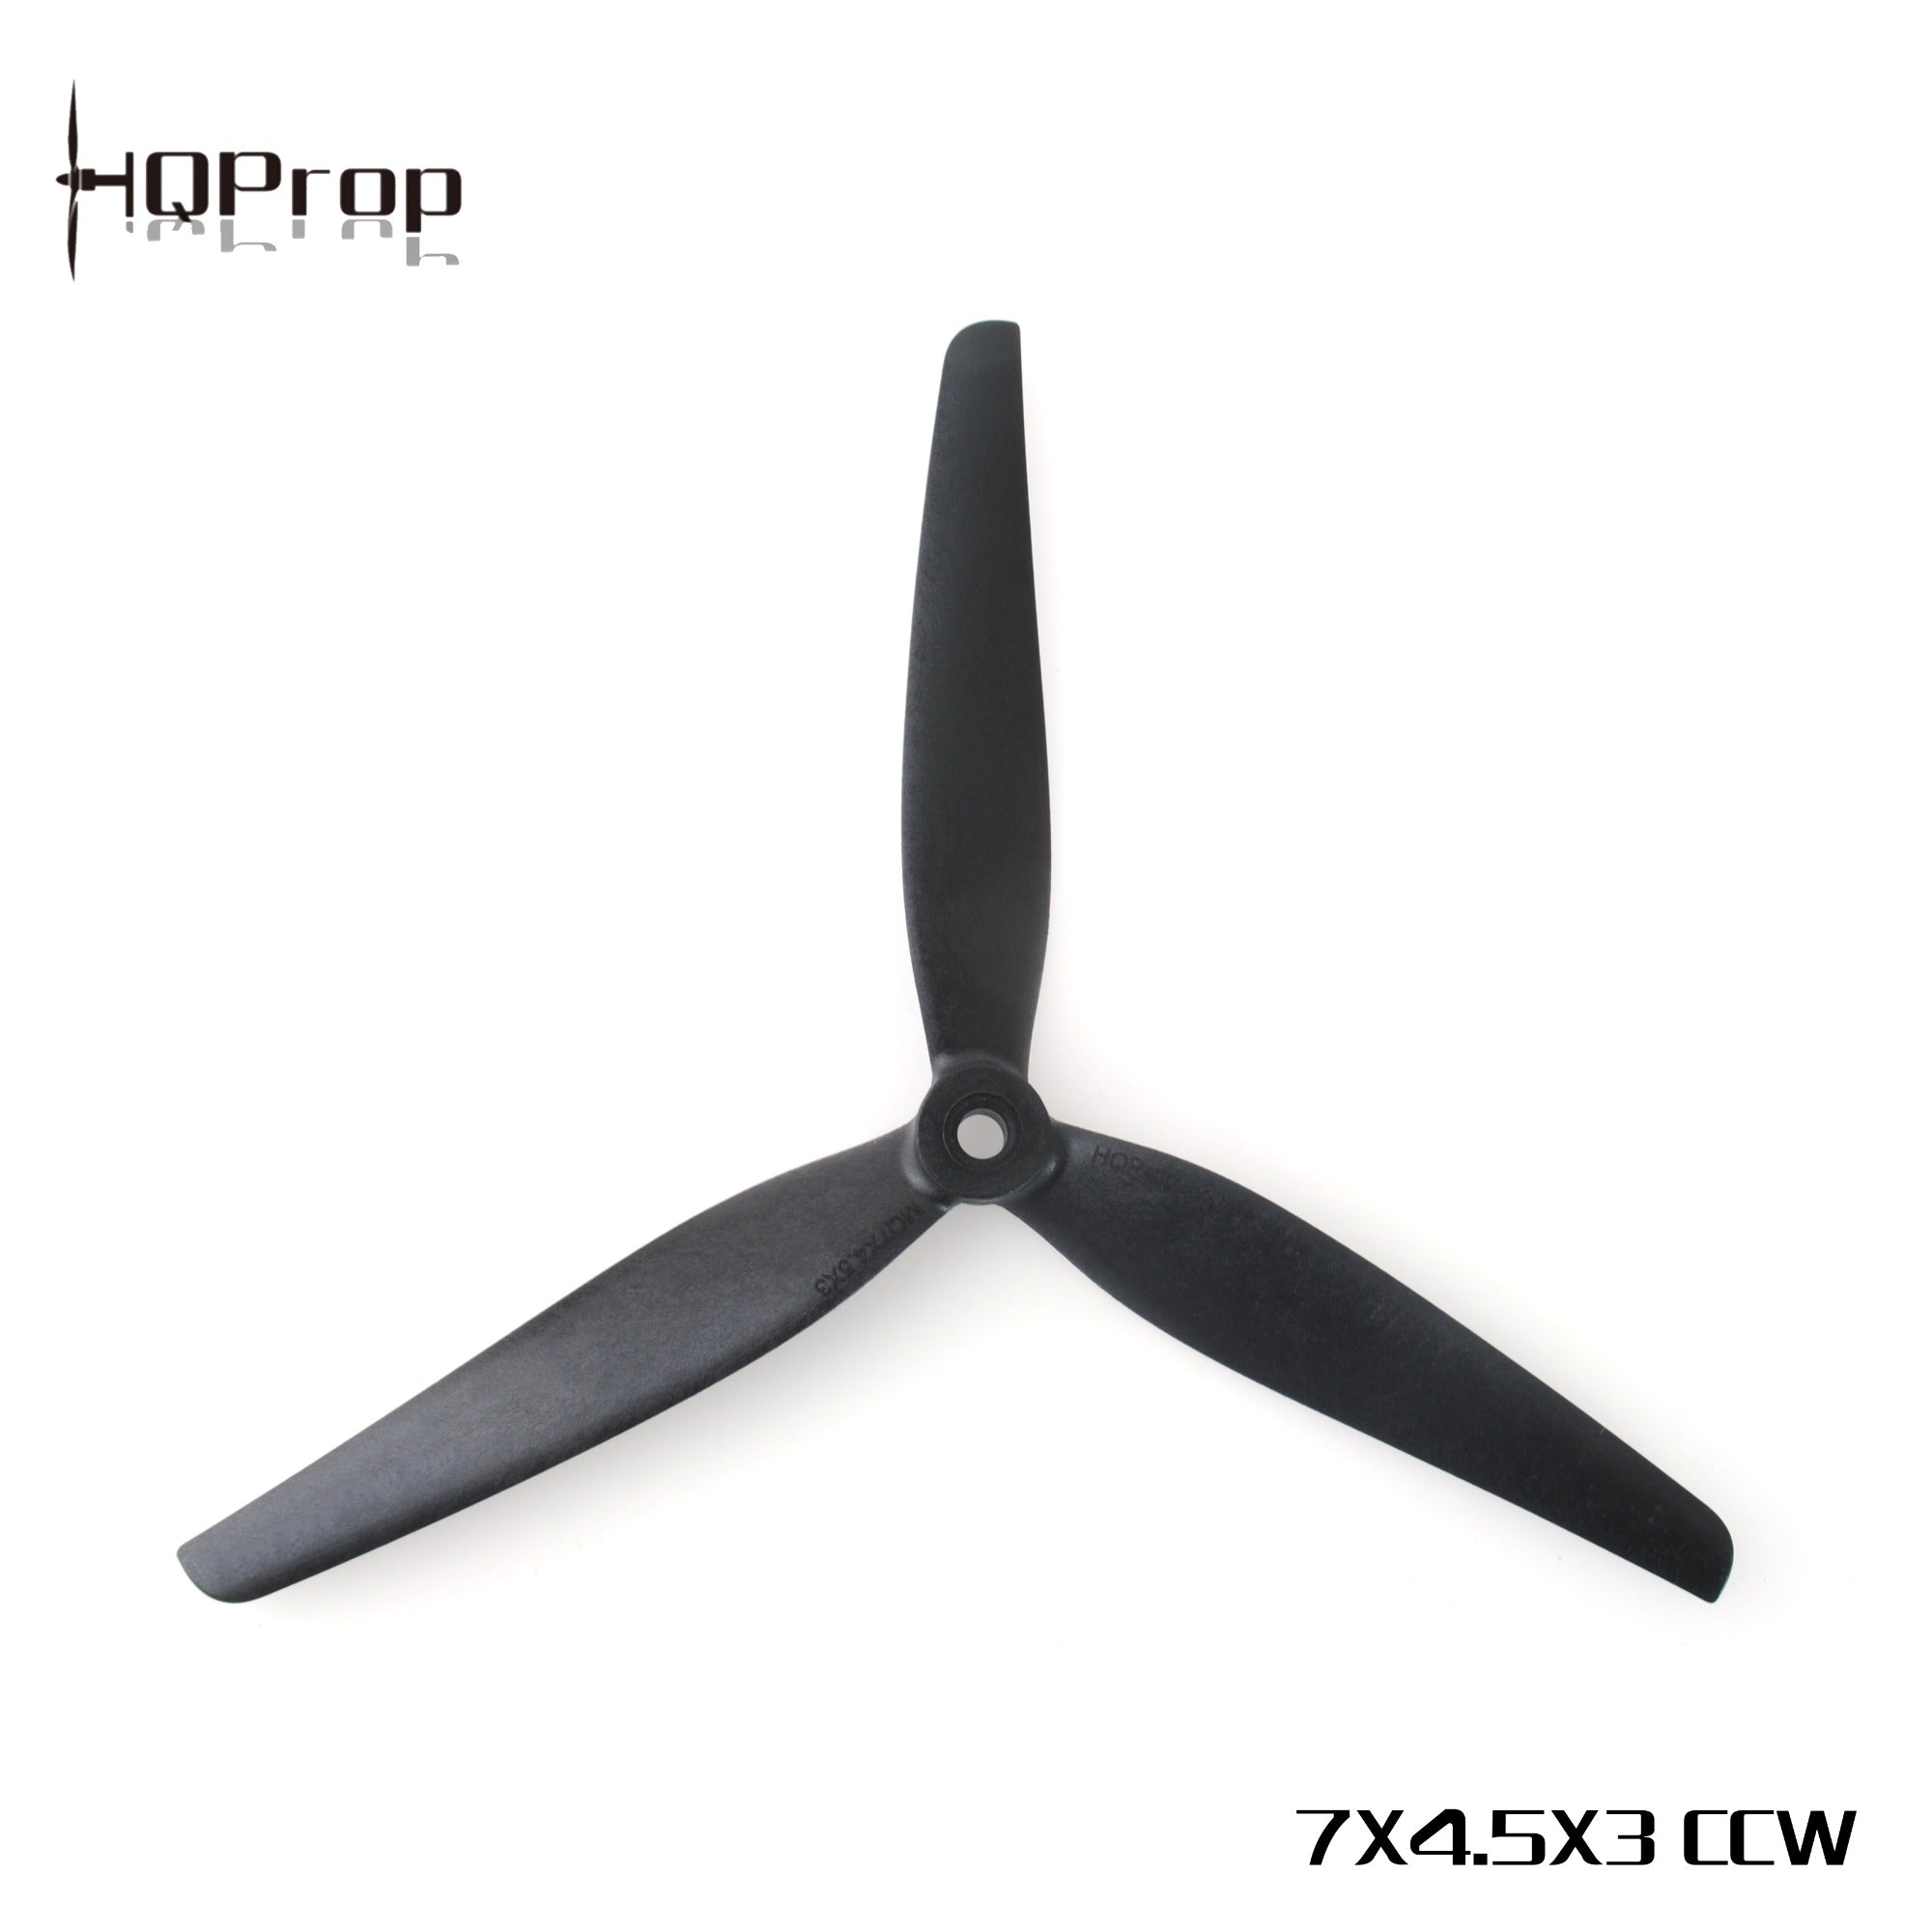 HQProp MacroQuad Prop 7X4.5X3R (CCW) Black-Glass Fiber Nylon 1 - HQProp - Drone Authority